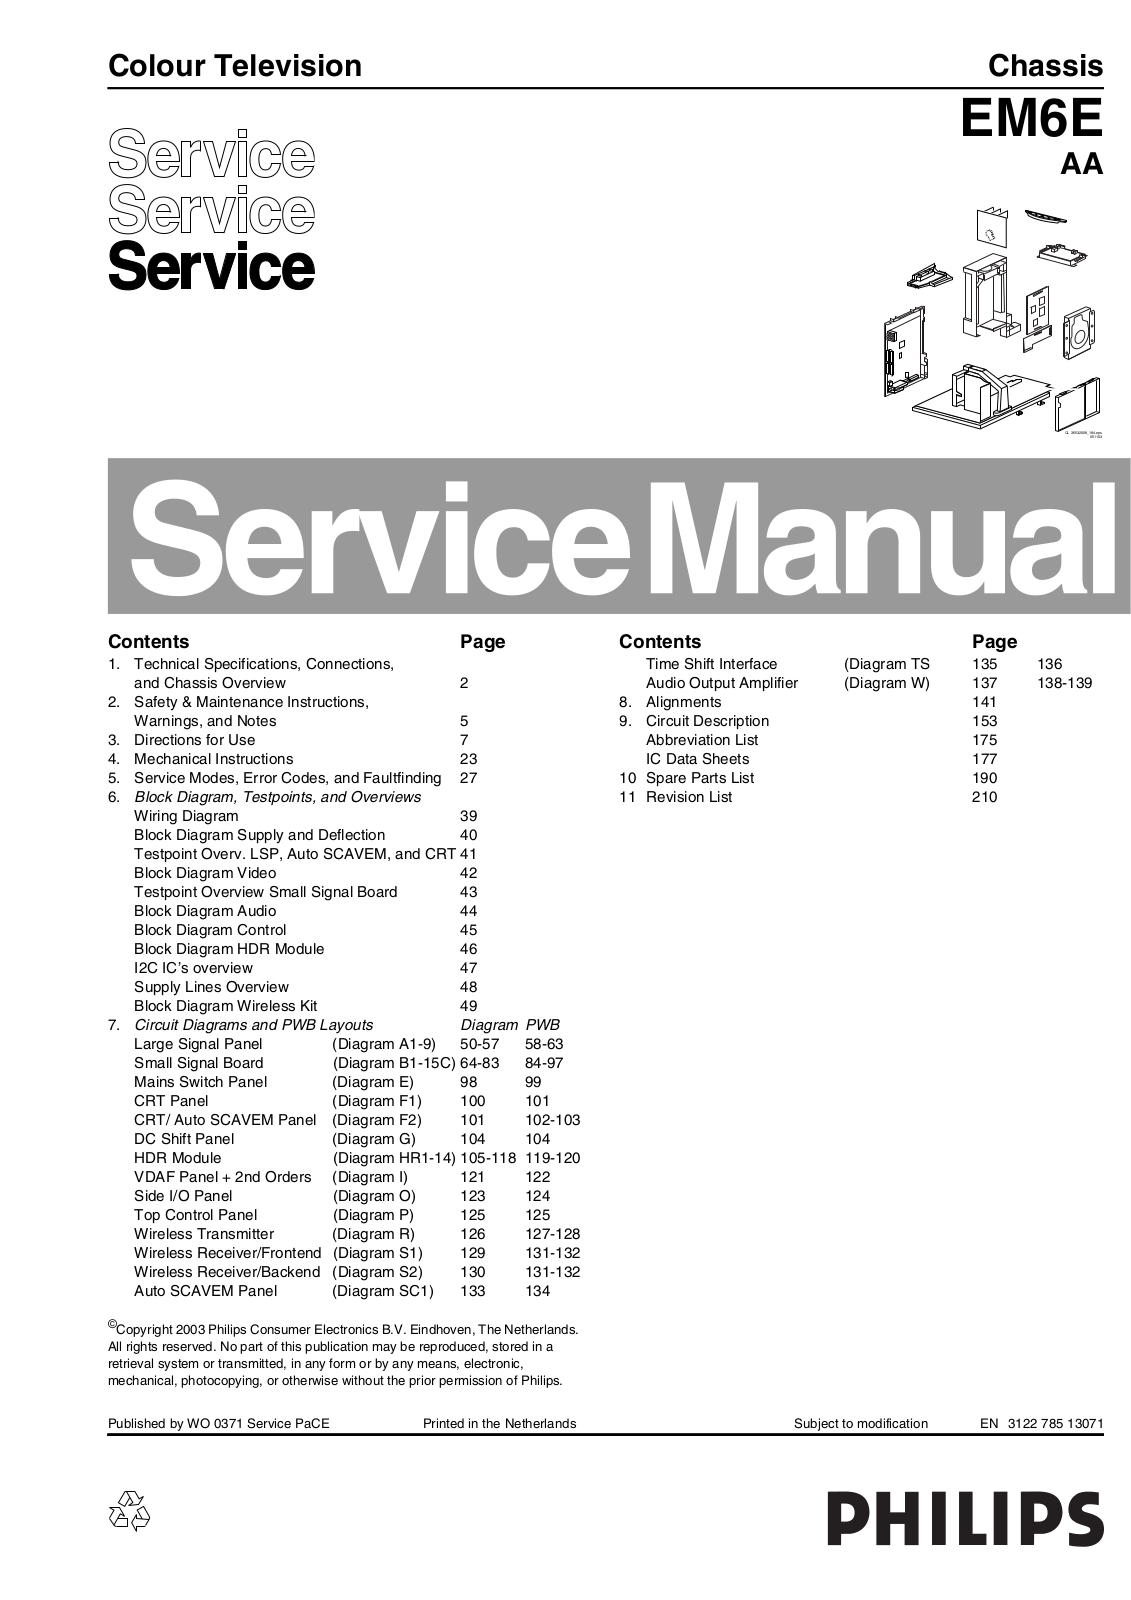 Philips EM6E AA Service Manual